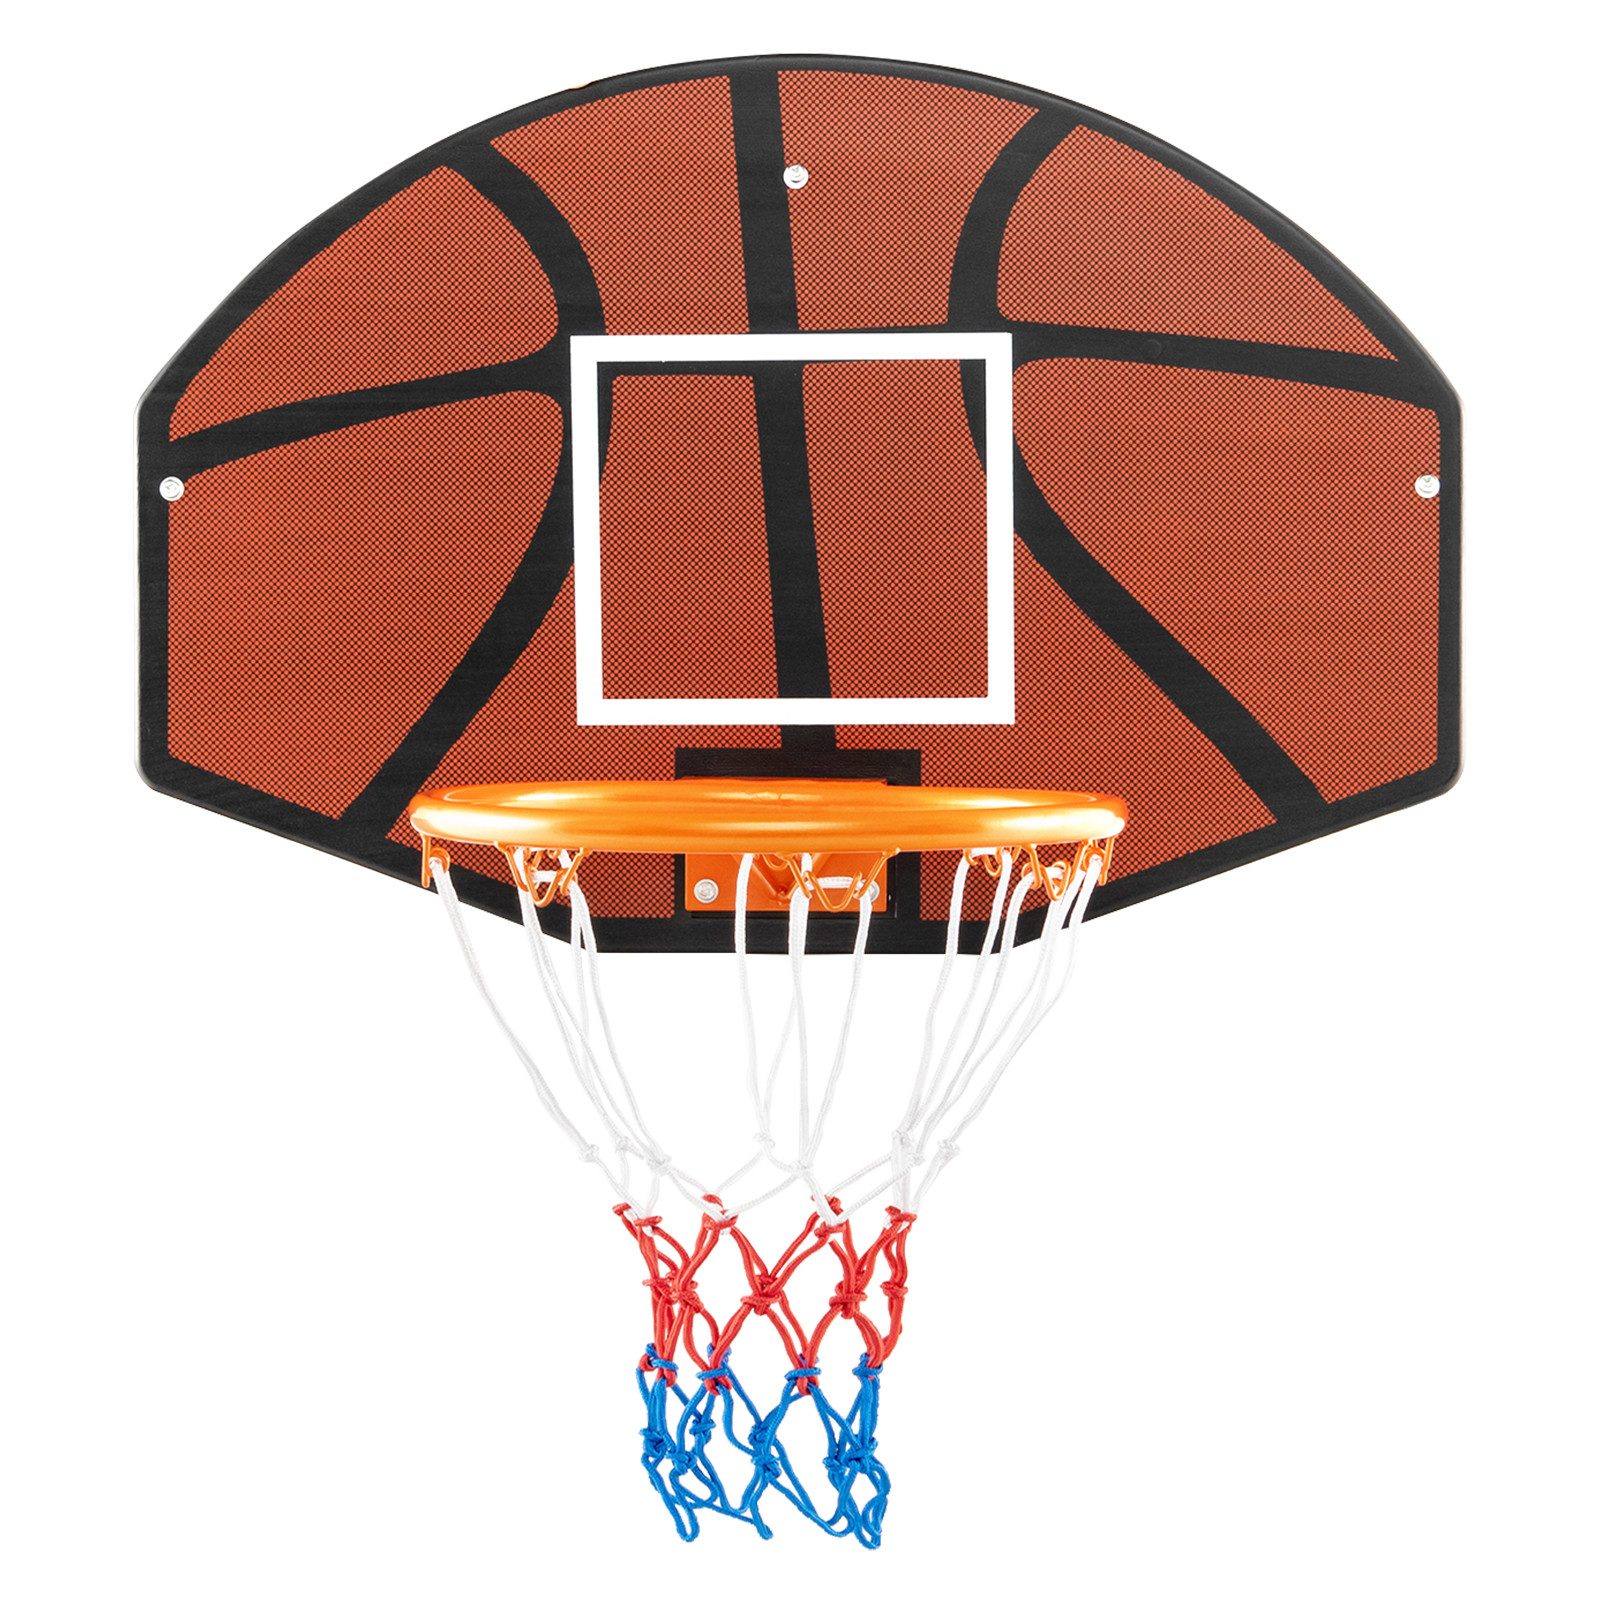 COSTWAY Basketballständer, Basketballnetz Indoor, Wandmontage